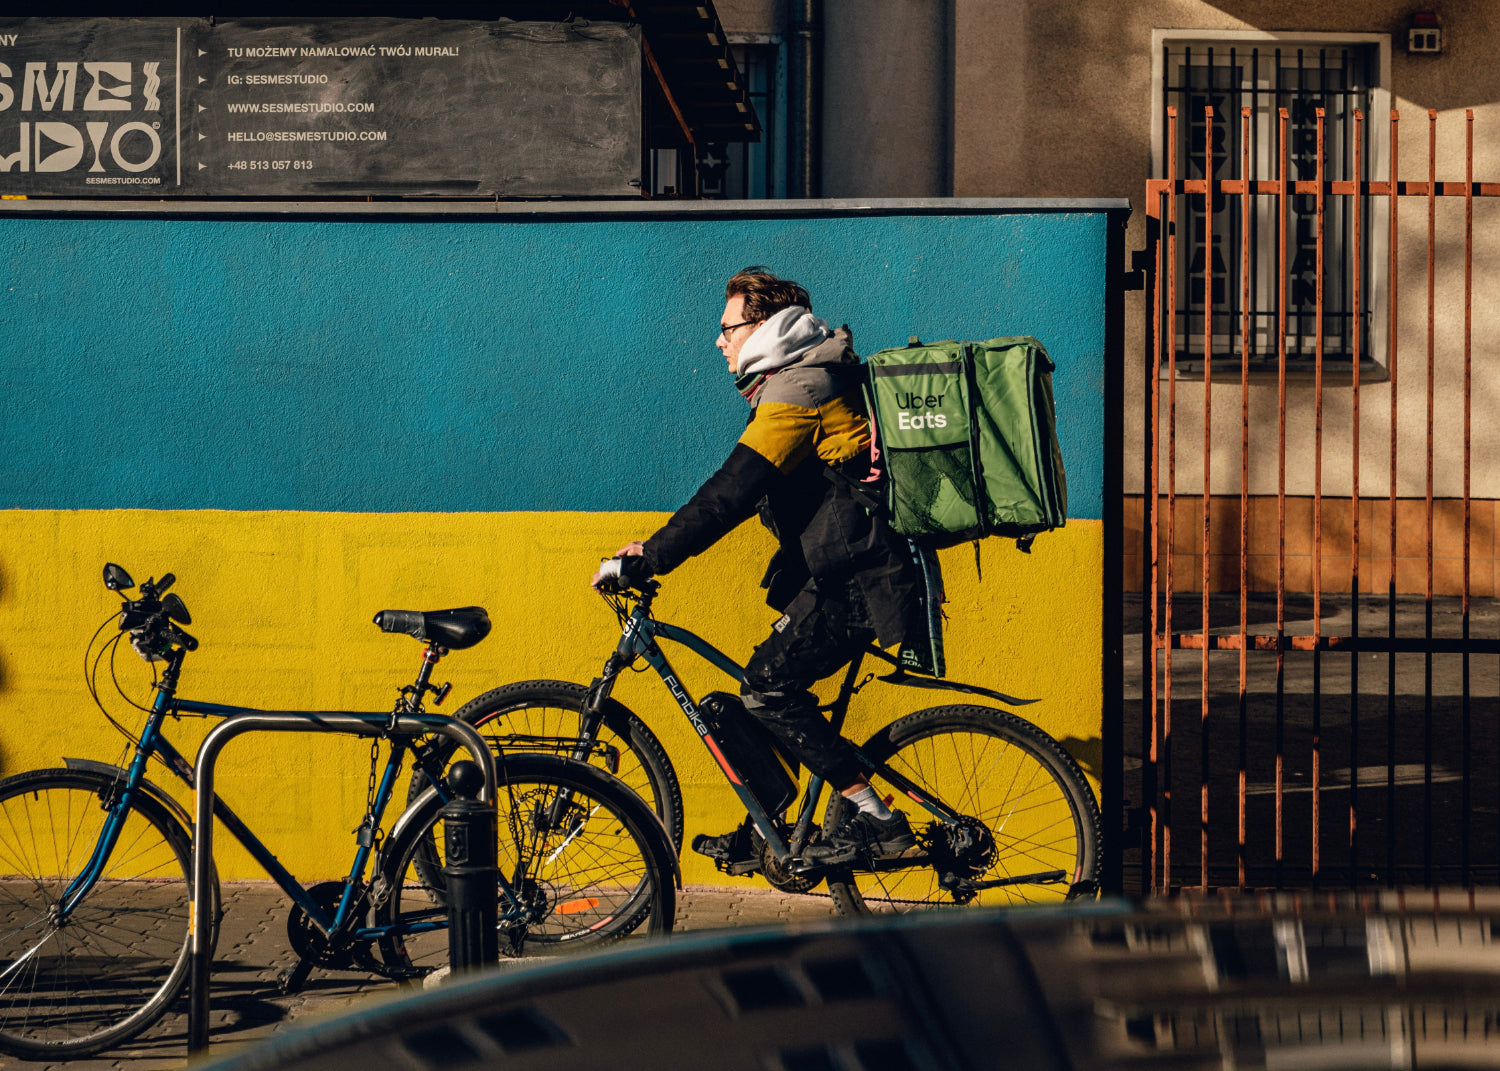 Iemand verdient online geld met klusjes door eten te bezorgen per fiets in een stad